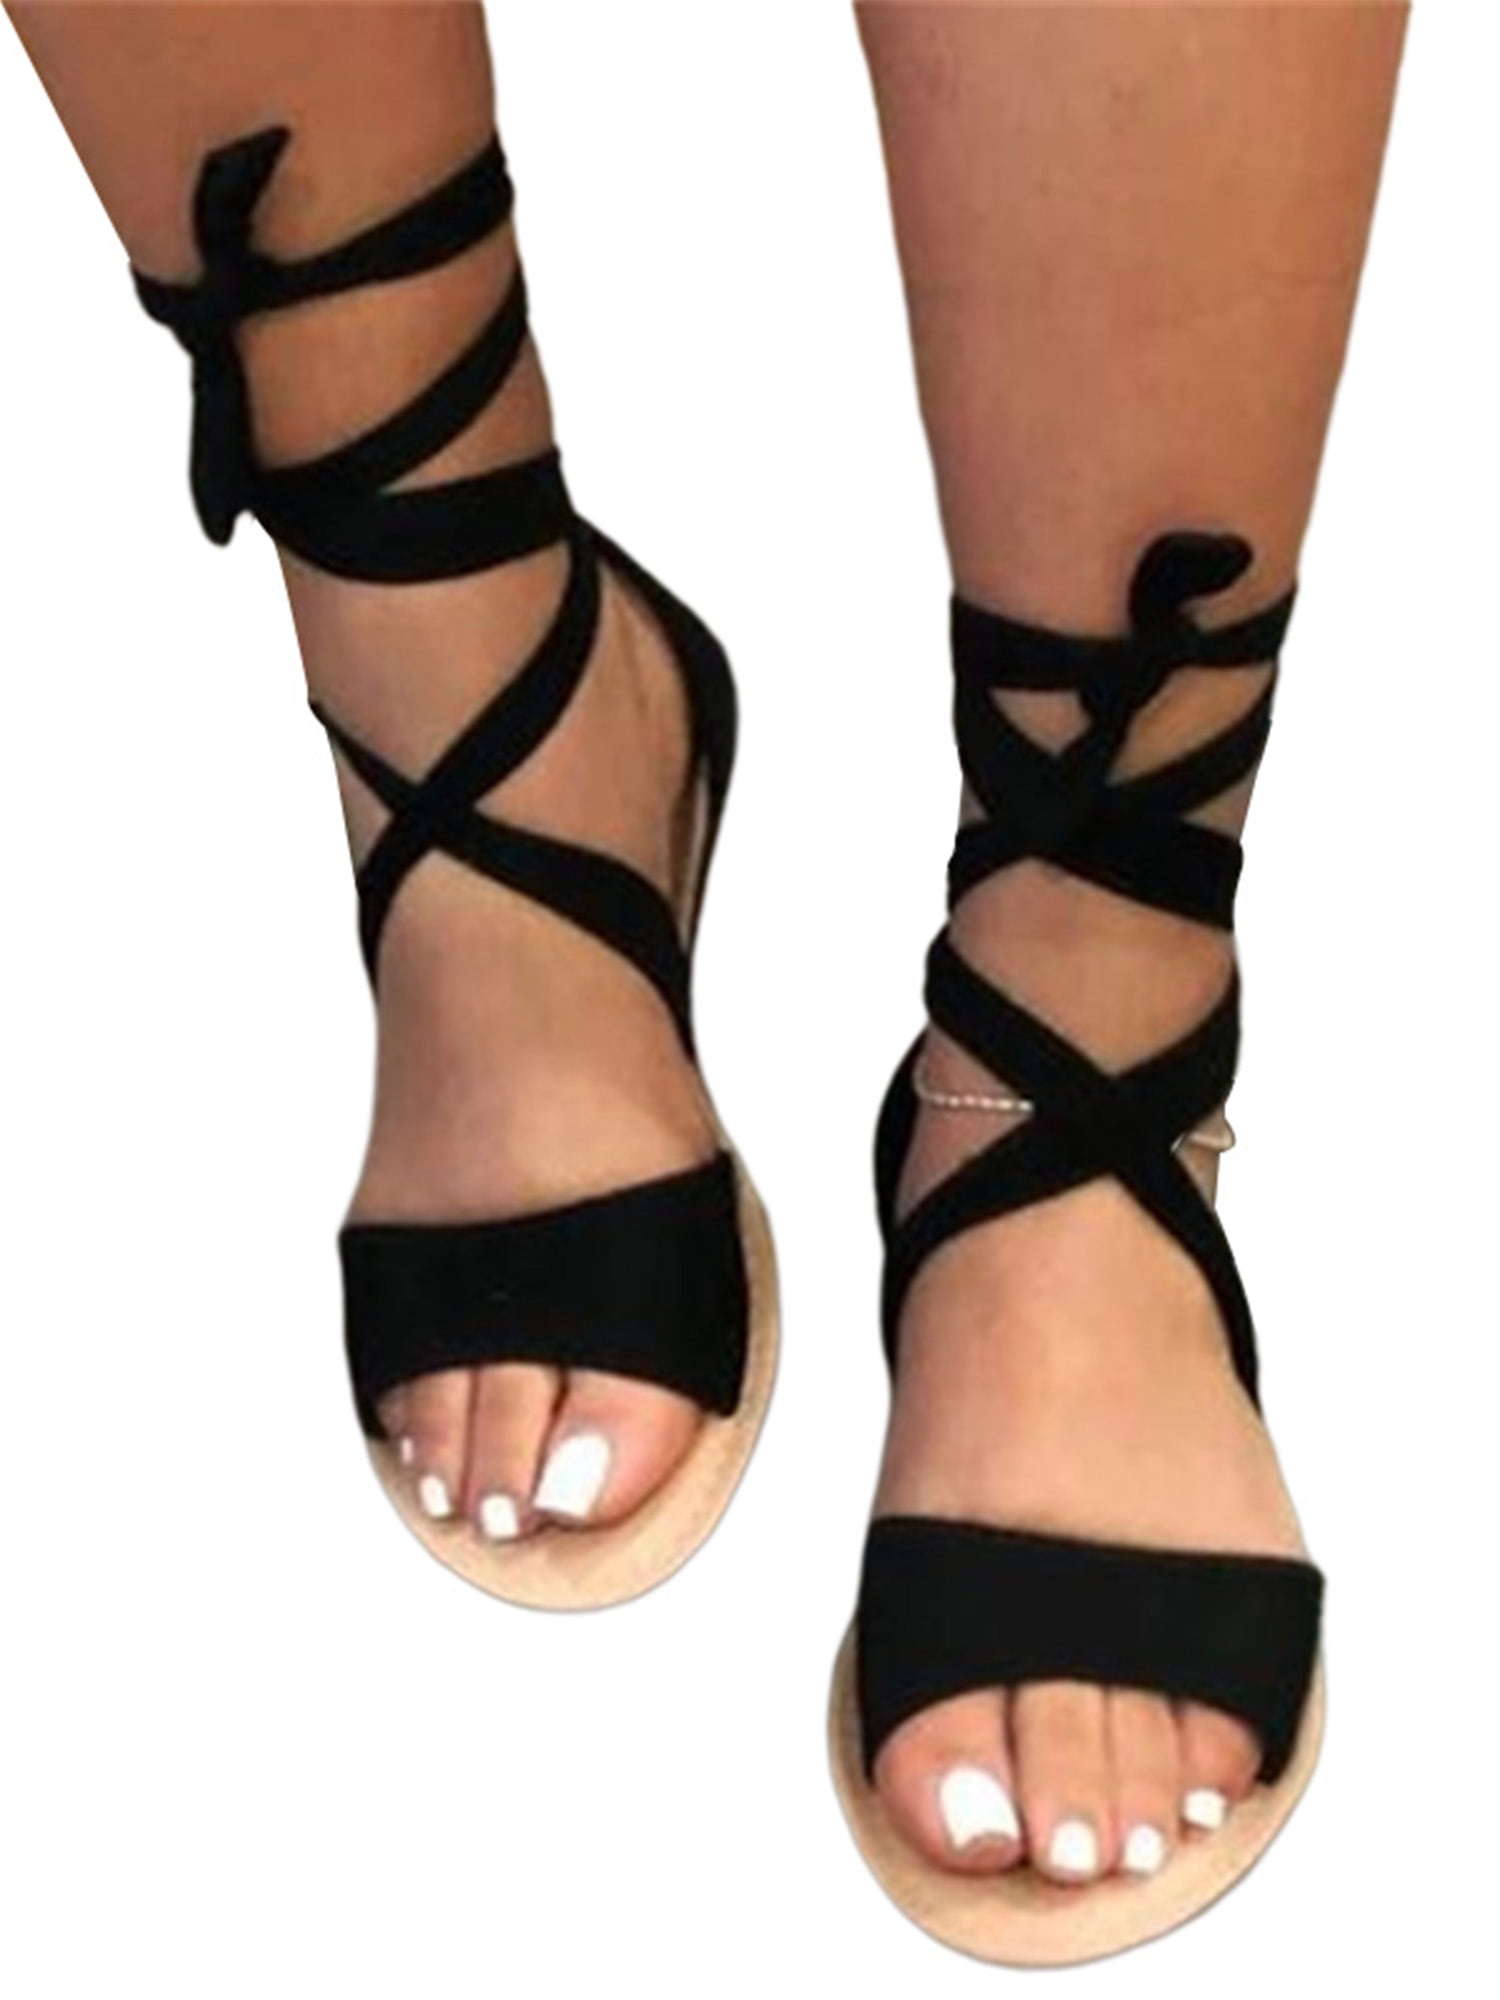 19 Women Summer Sandals Shoes Peep-toe Low Shoes Lady Roman Sandals Flip Flops